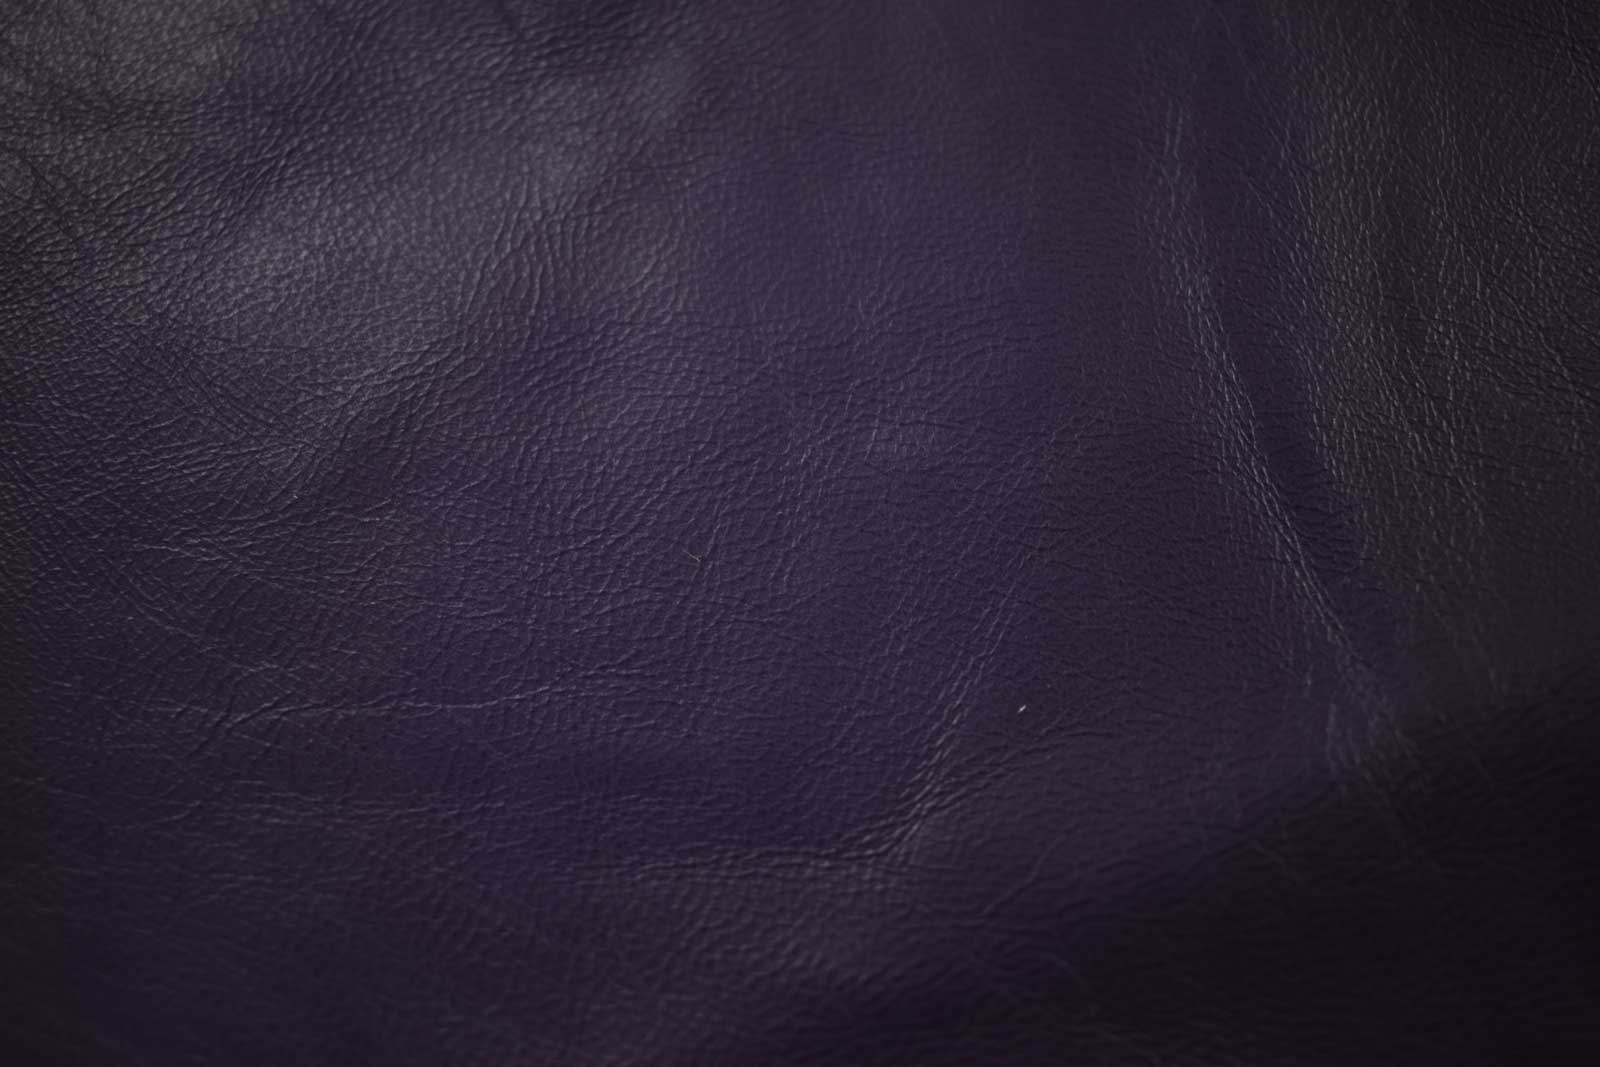 Purple Lambskin Hide - Nappa leather